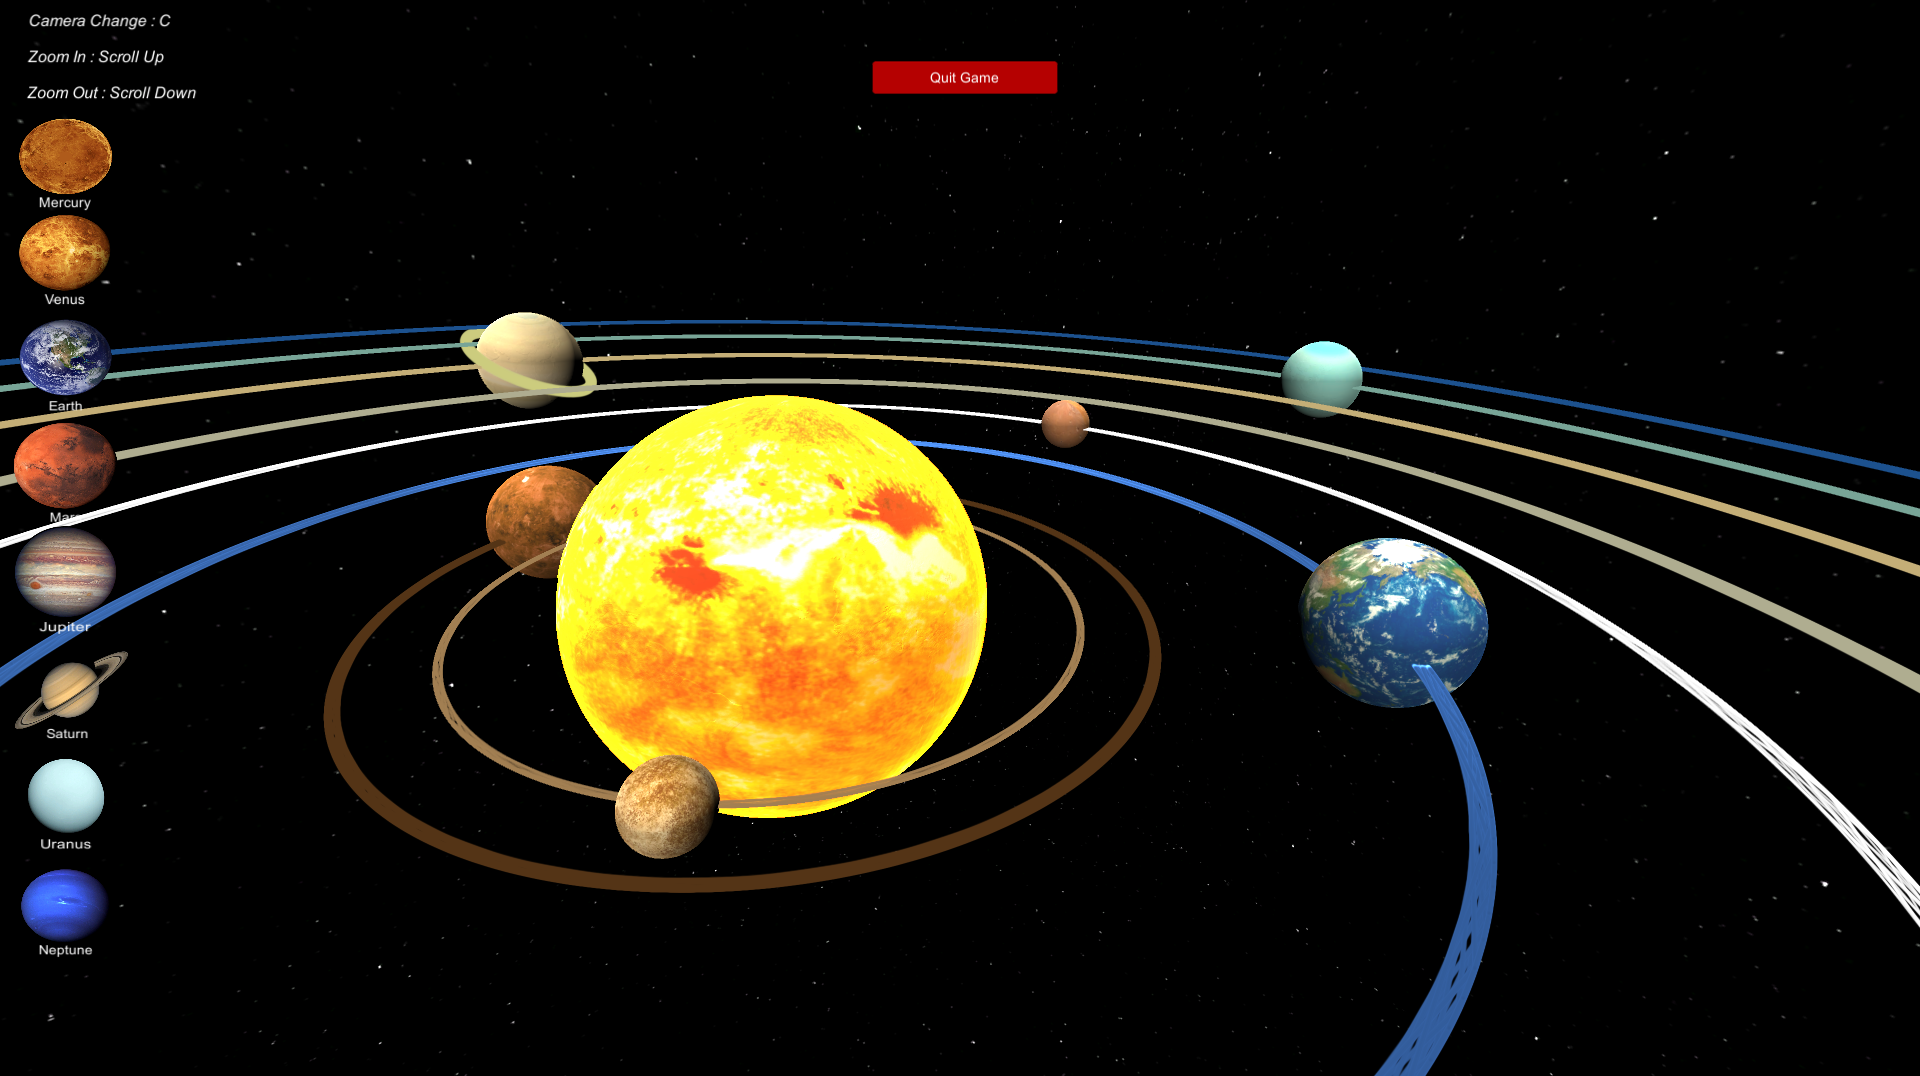 Solar system map. Солнечная система. Модель солнечной системы. Карта солнечной системы. Макет солнечной системы.